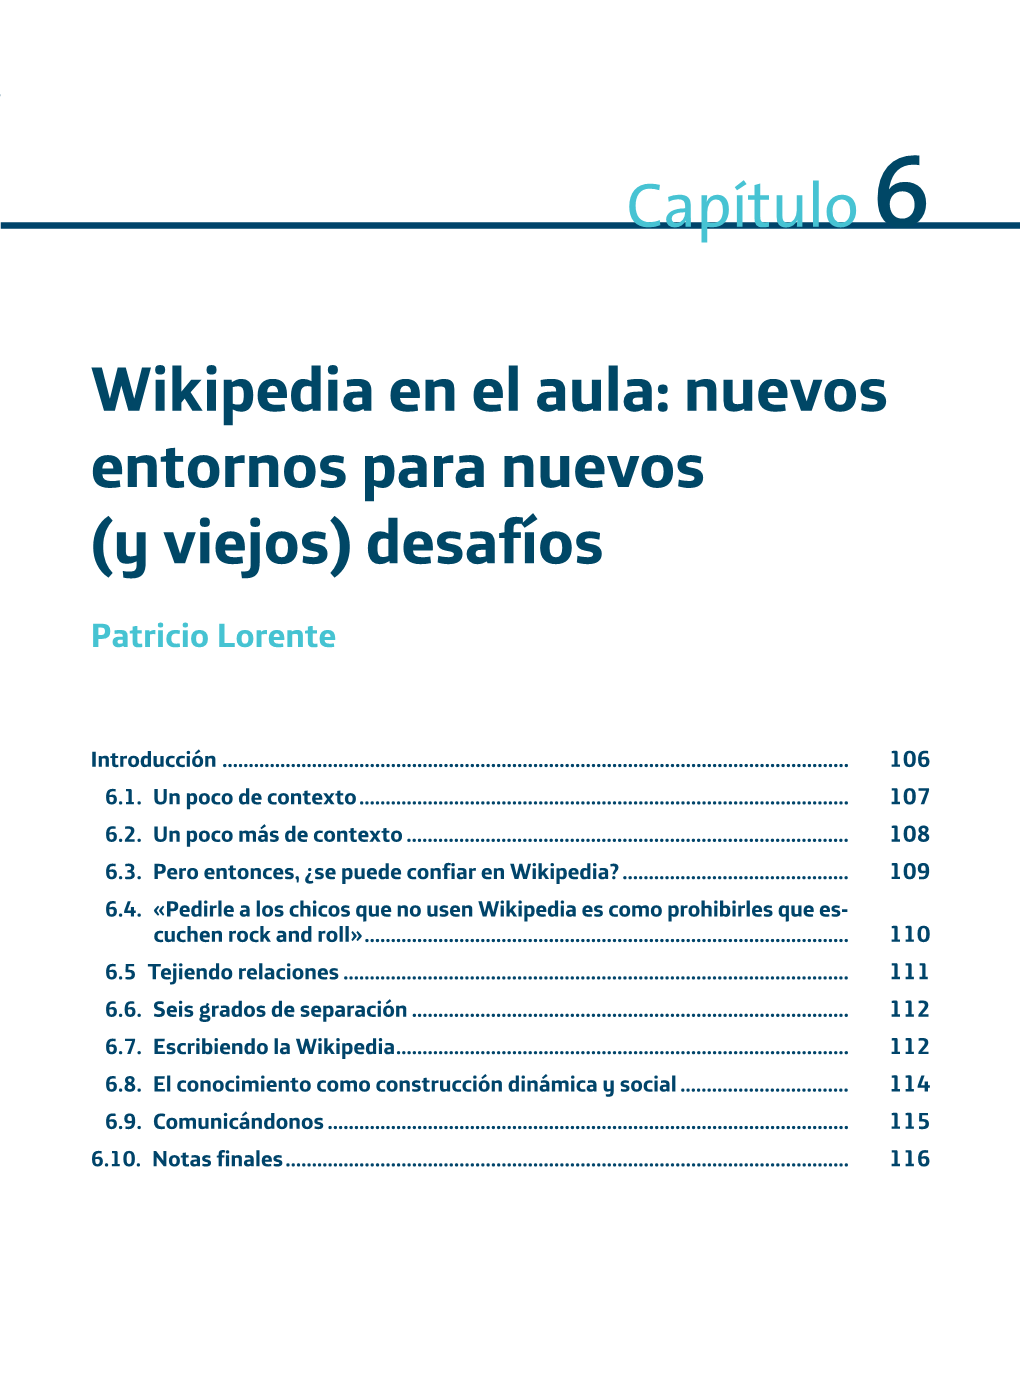 Wikipedia En El Aula: Nuevos Entornos Para Nuevos (Y Viejos) Desafíos